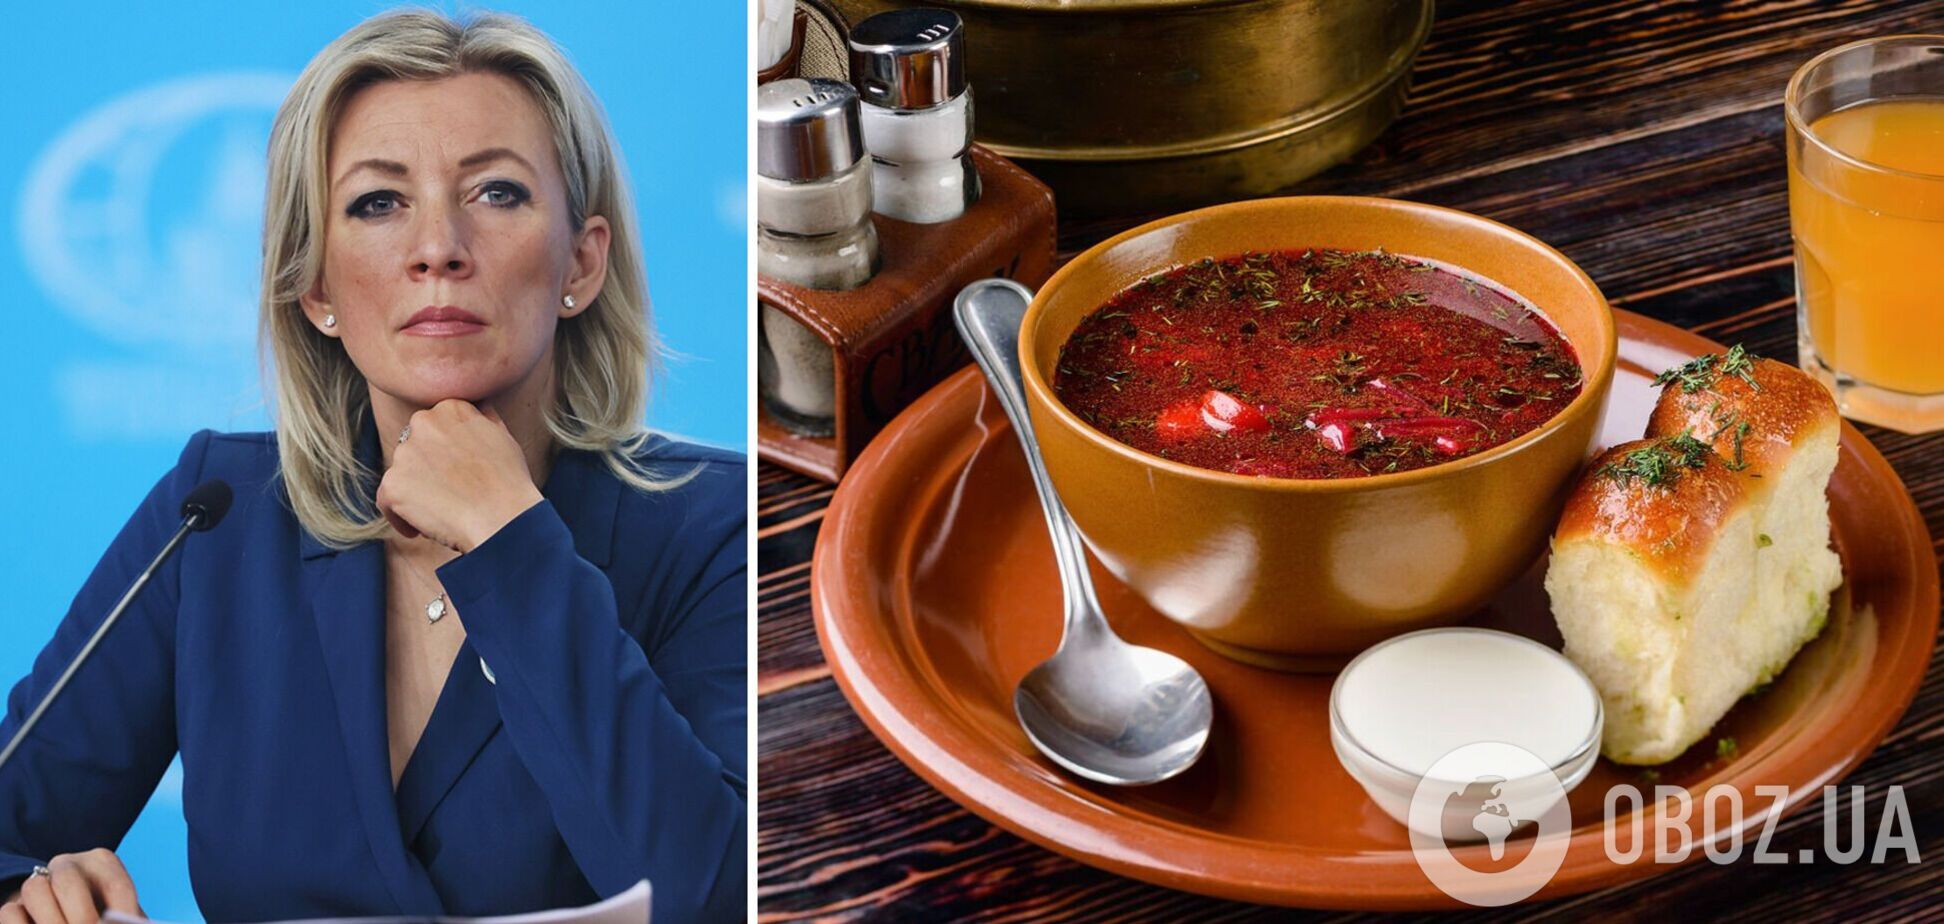 Захарова расстроена решением ЮНЕСКО признать борщ украинским блюдом